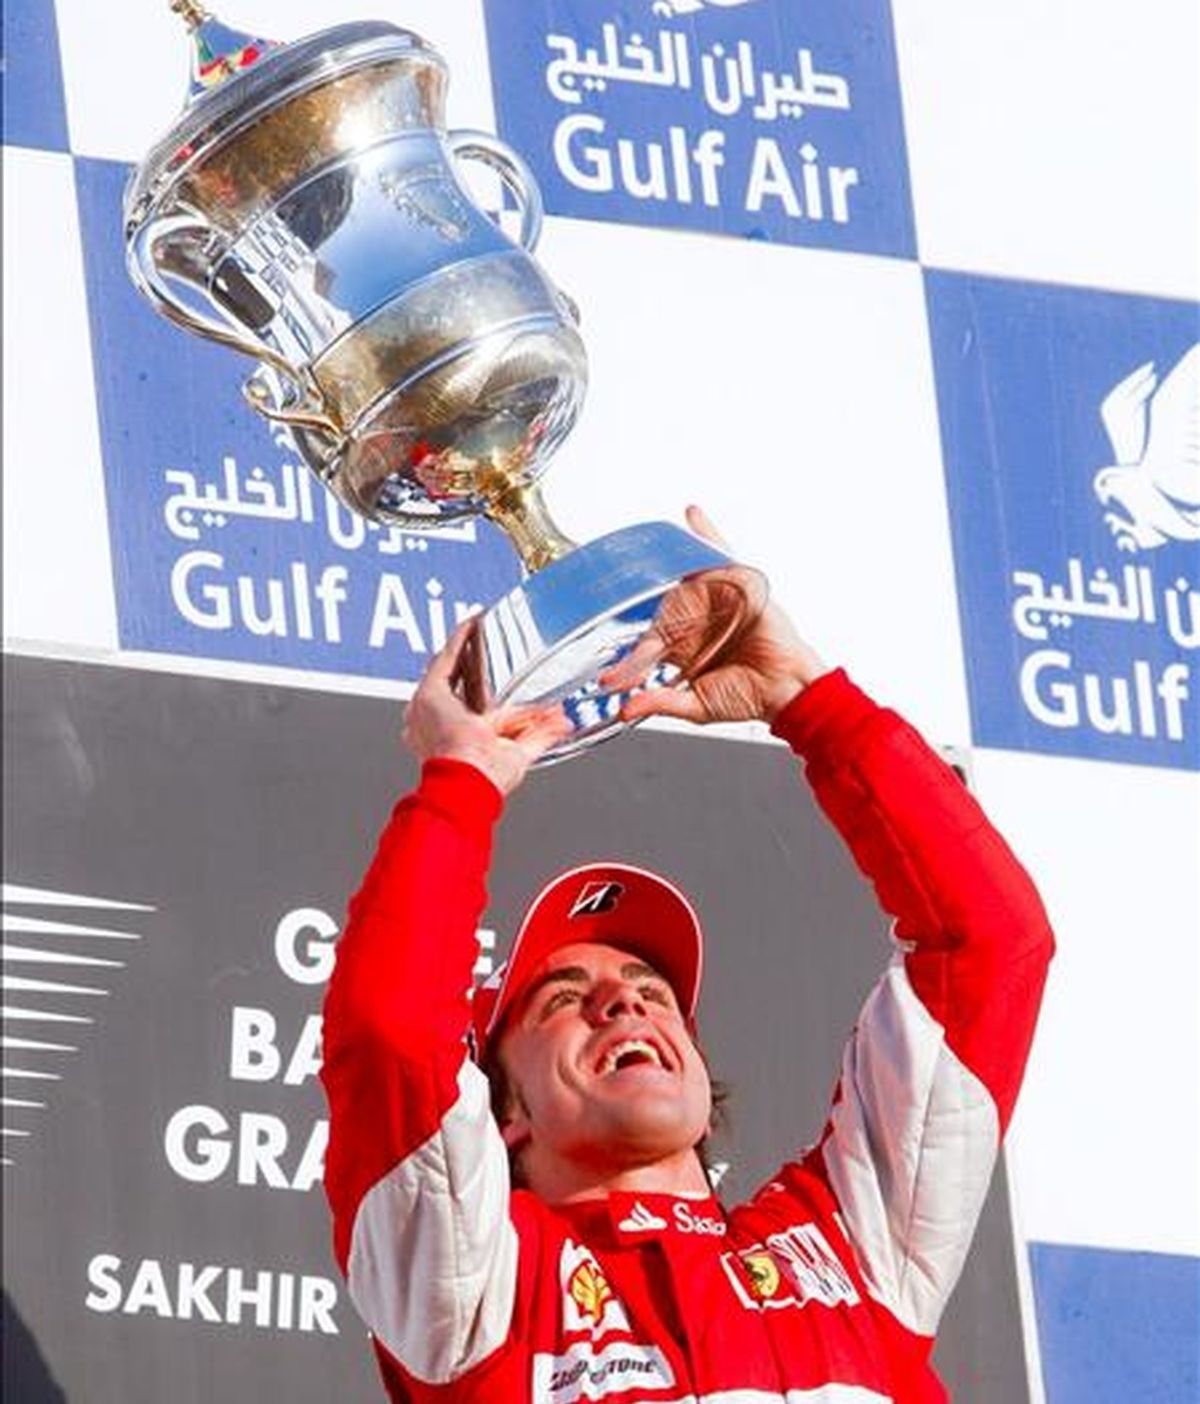 El piloto español de la escudería Ferrari, Fernando Alonso, levanta su trofeo de ganador en el podio del Gran Premio de Bahrein hoy en el Circuito Internacional de Bahrein en Sakhir. EFE